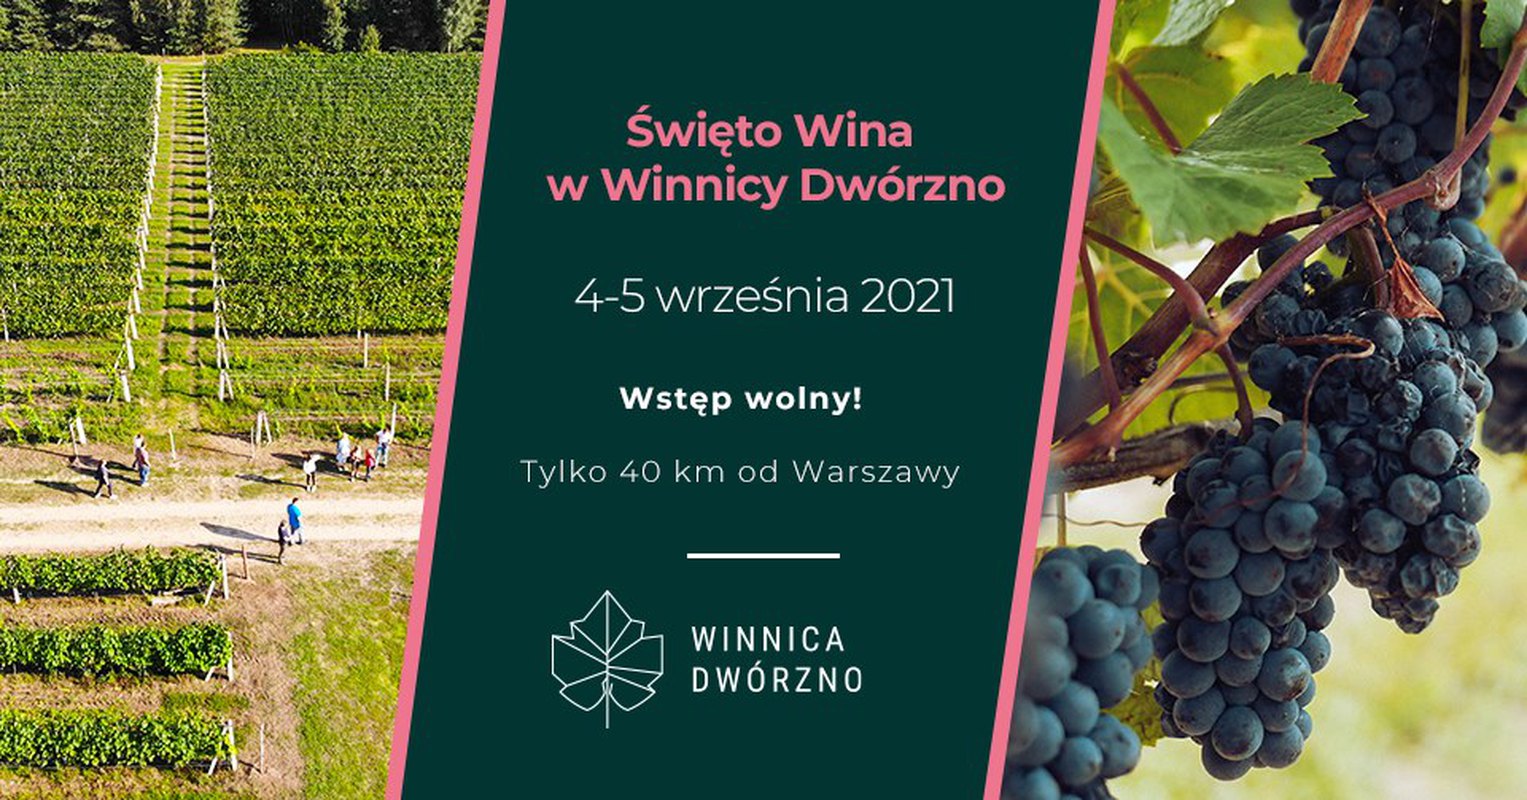 Święto Wina w Winnicy Dwórzno 4-5 września 2021 - wstęp wolny! Tylko 40 km od WWA